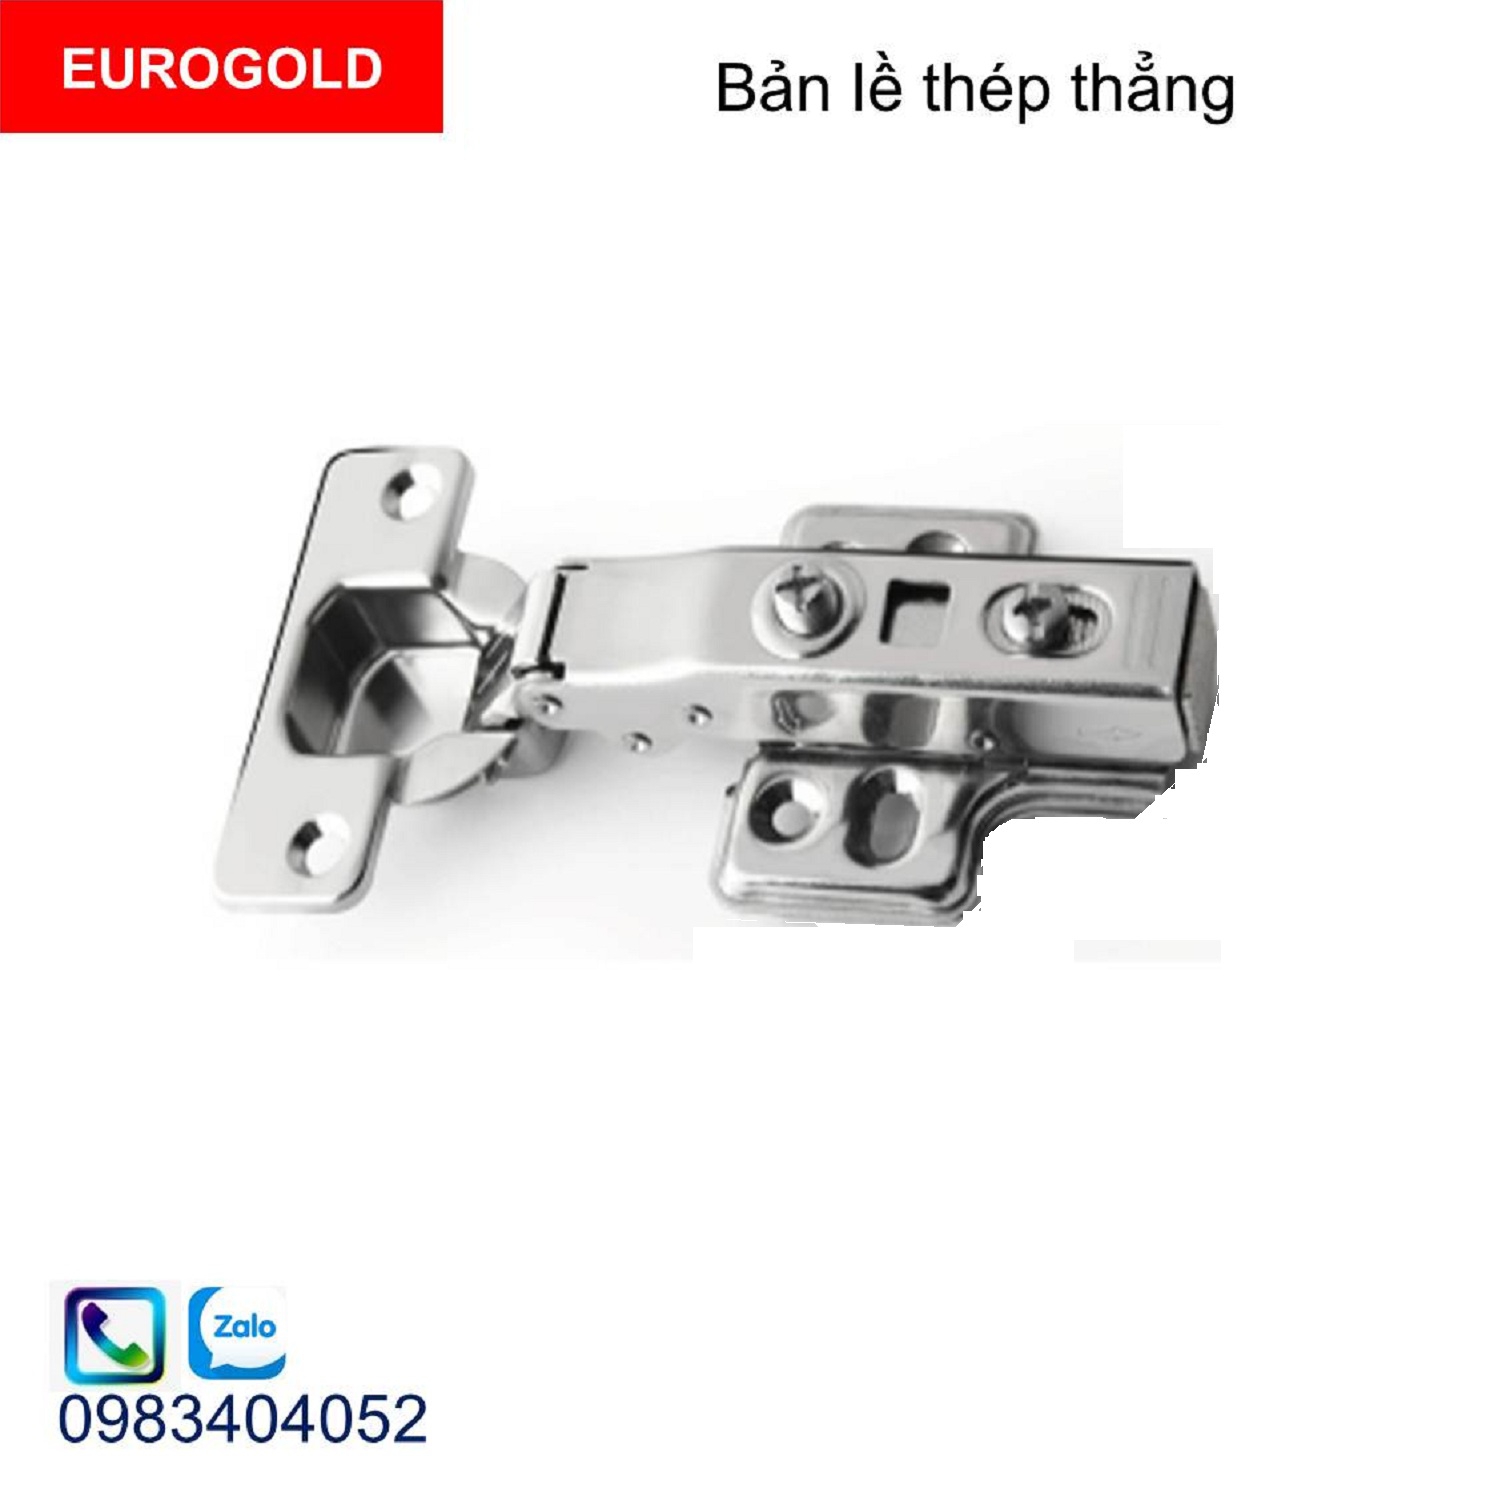 Ban-le-tu-eurogold